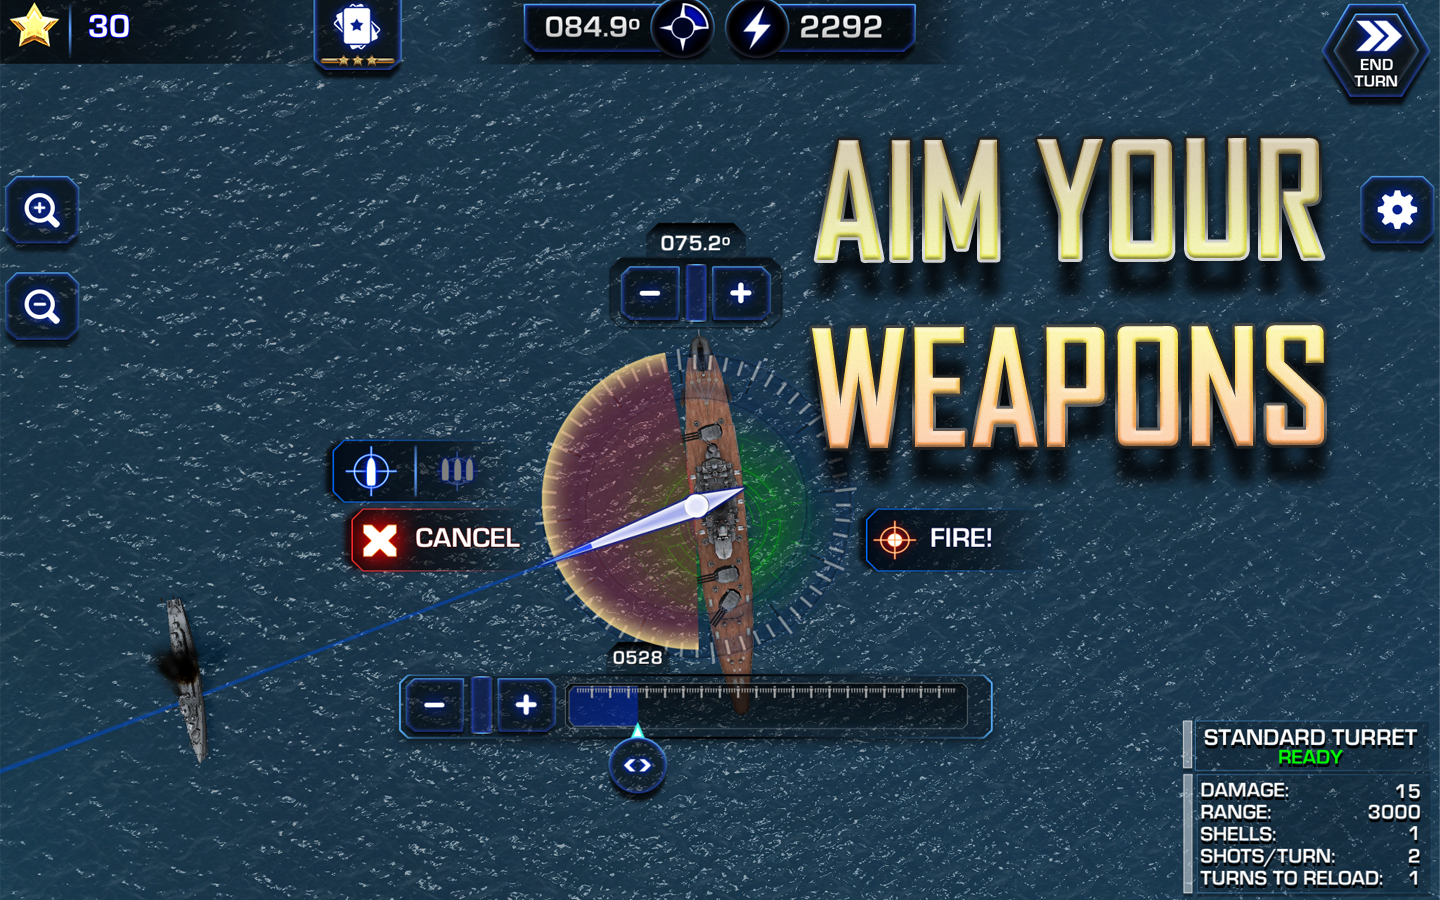    Battle Fleet 2- screenshot  